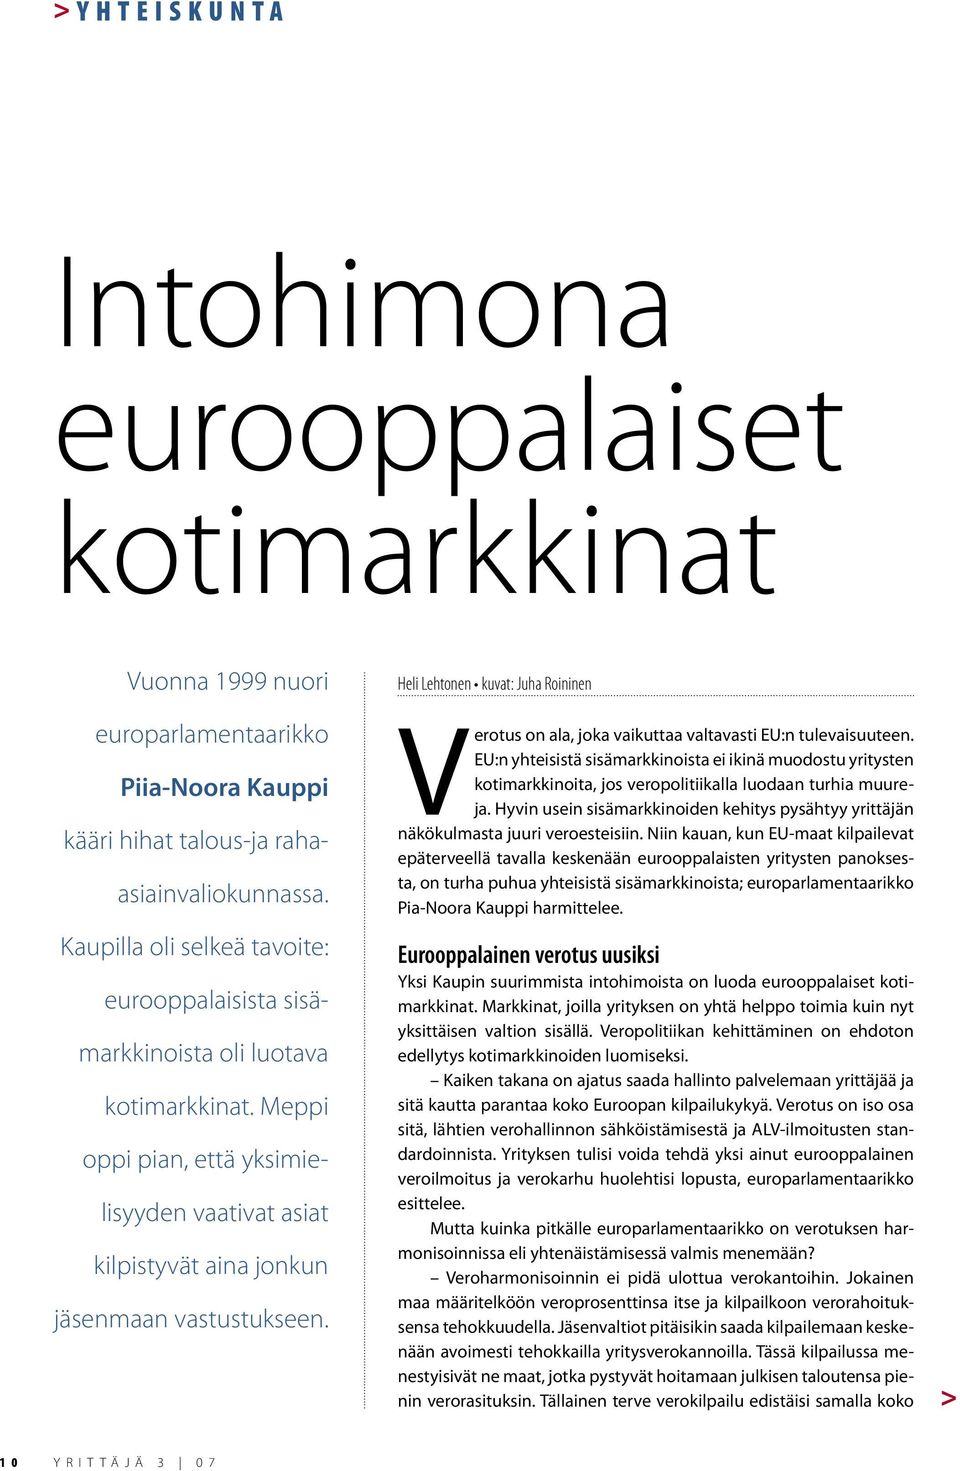 Heli Lehtonen kuvat: Juha Roininen Verotus on ala, joka vaikuttaa valtavasti EU:n tulevaisuuteen.